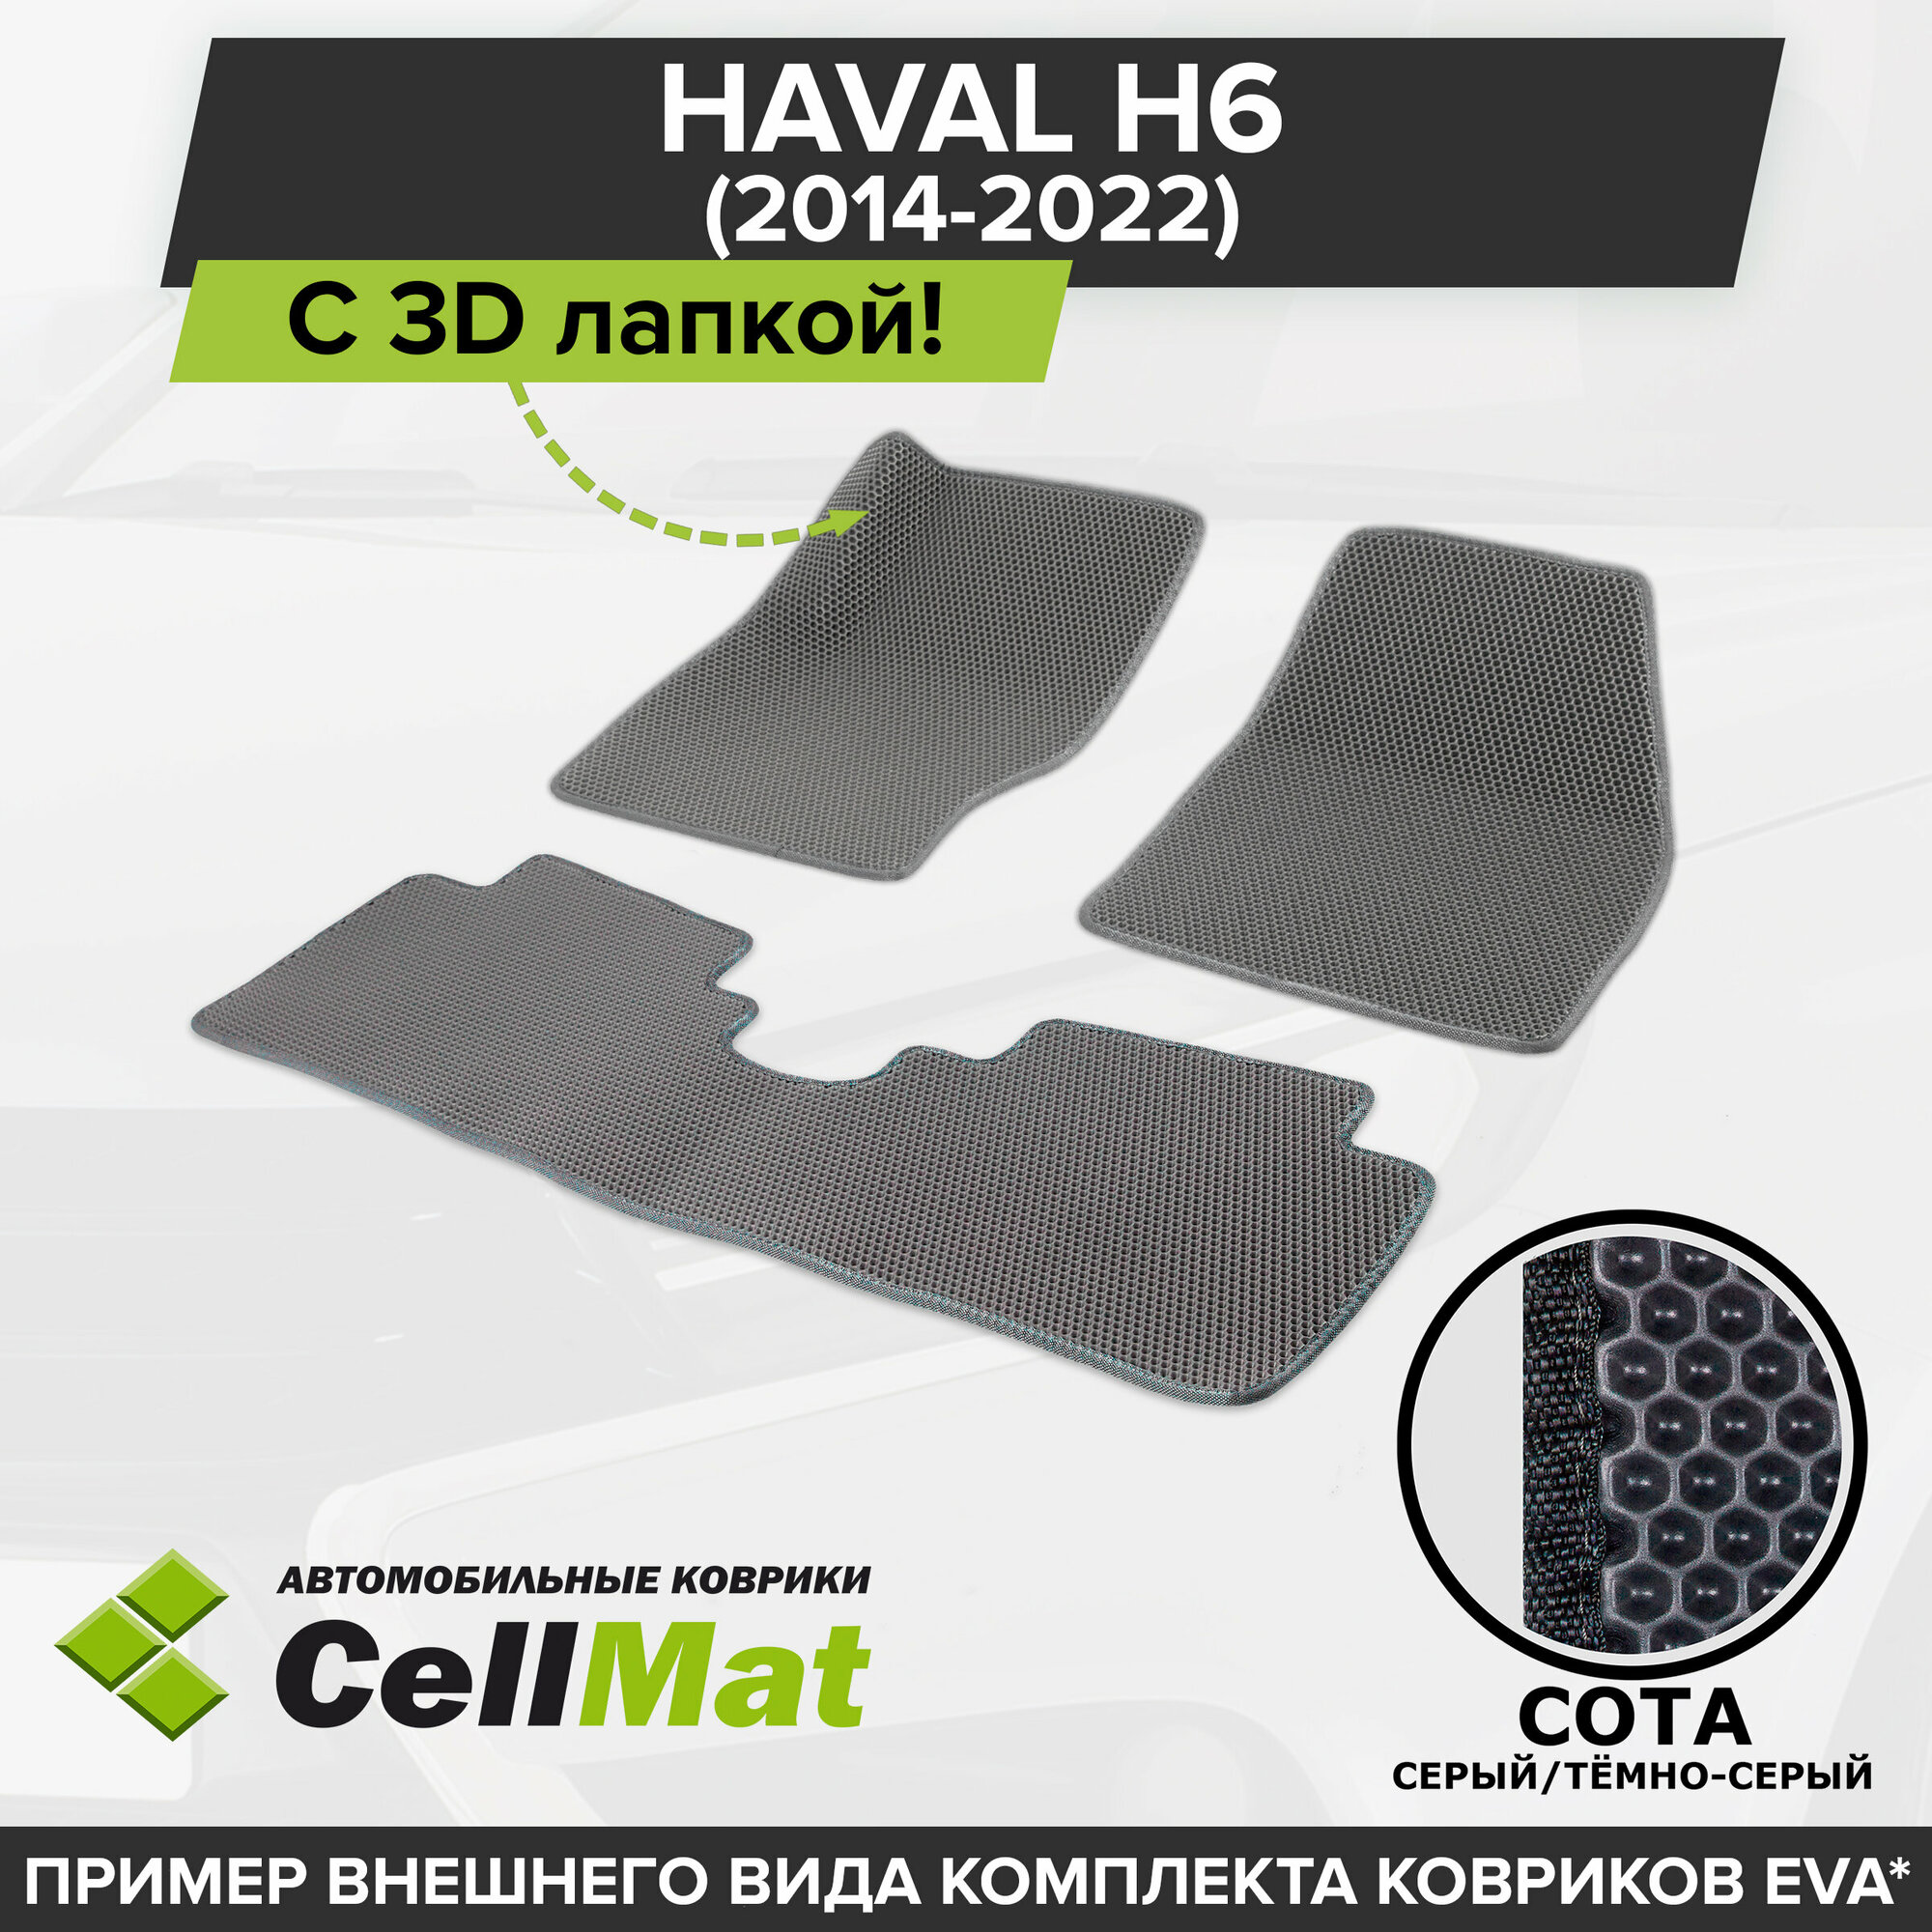 ЭВА ЕВА EVA коврики CellMat в салон c 3D лапкой для Haval H6, Хавал H6, 2014-2022